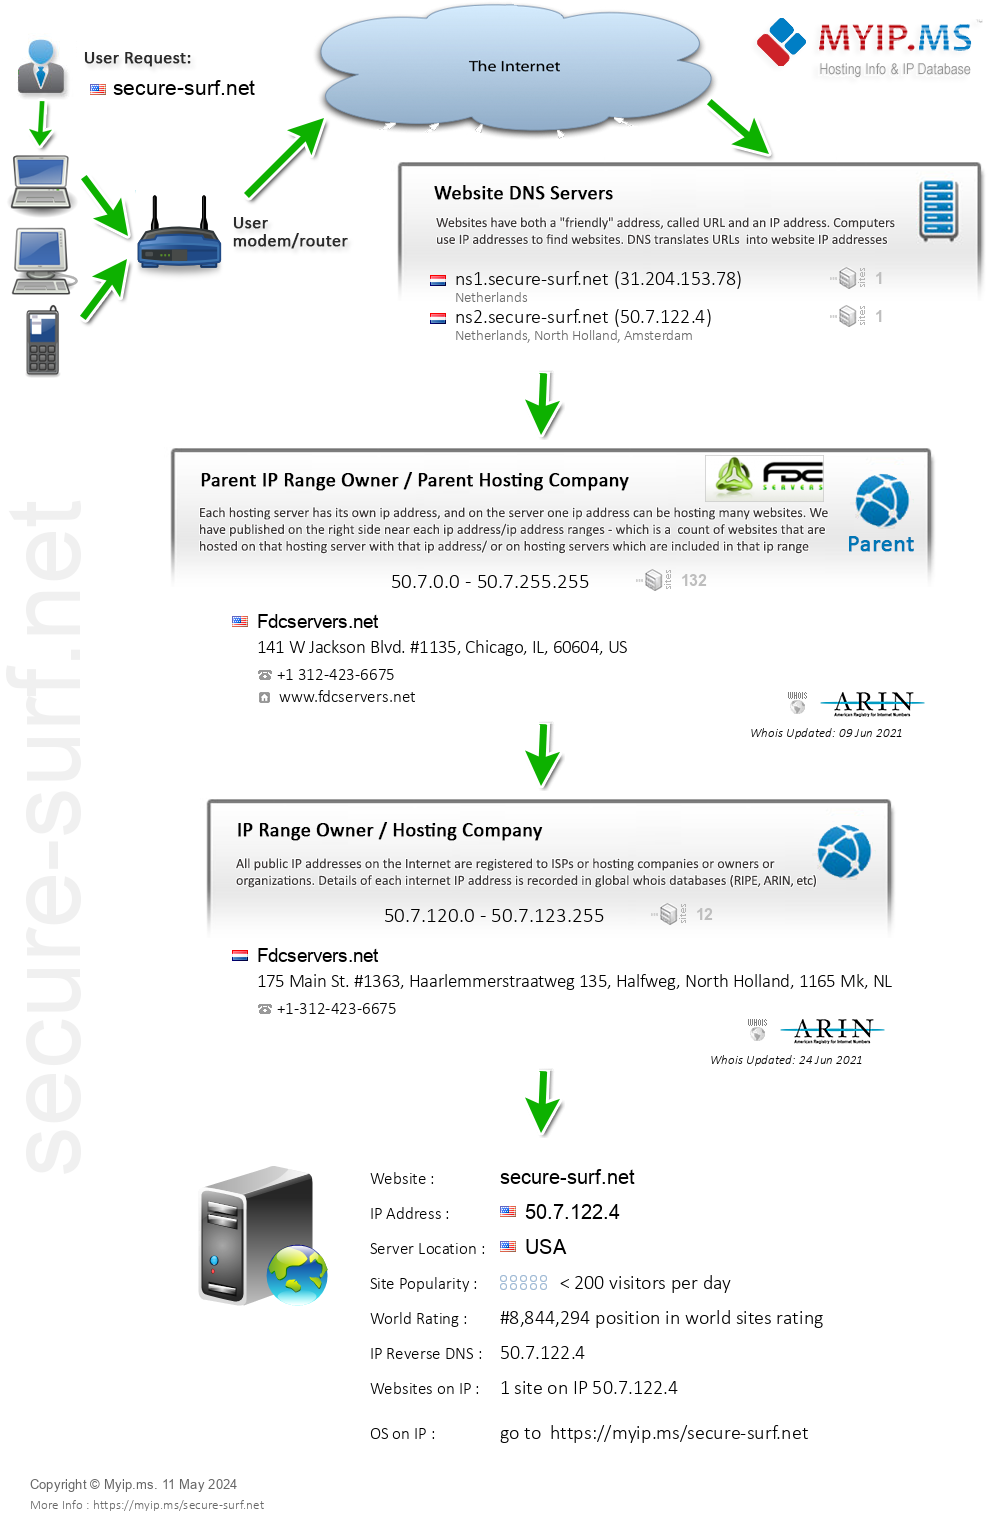 Secure-surf.net - Website Hosting Visual IP Diagram